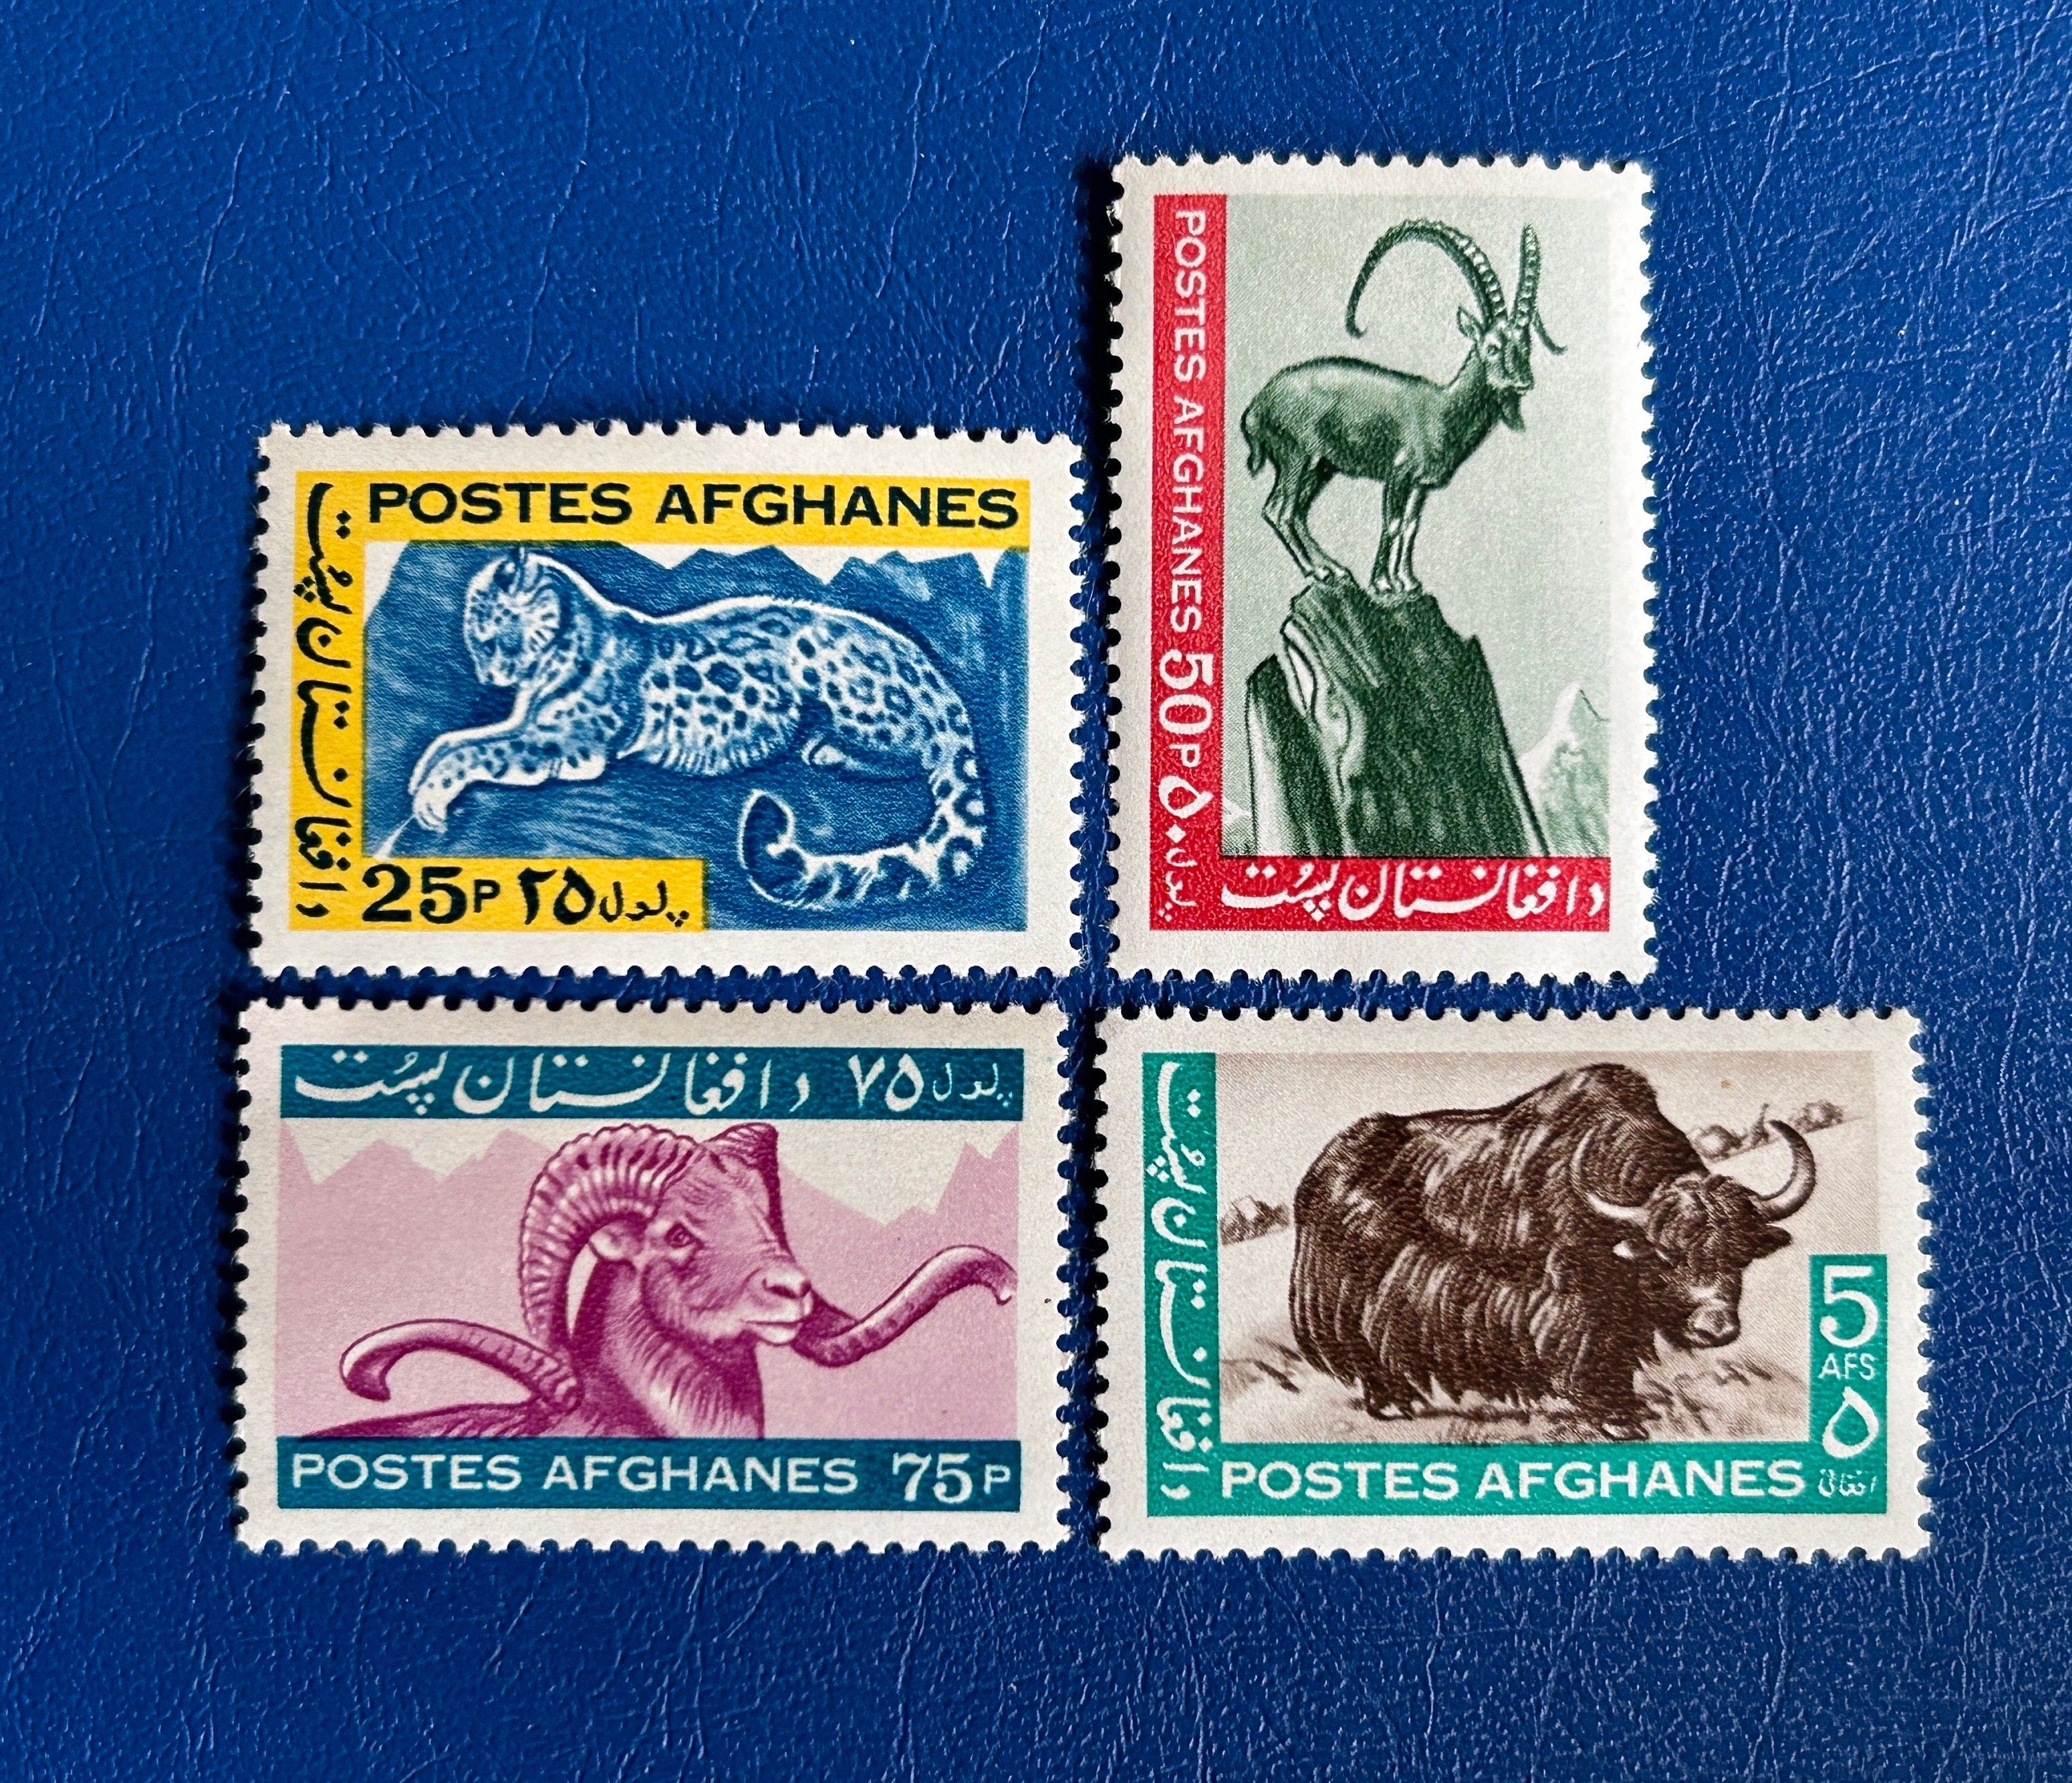 Vintage design stamps